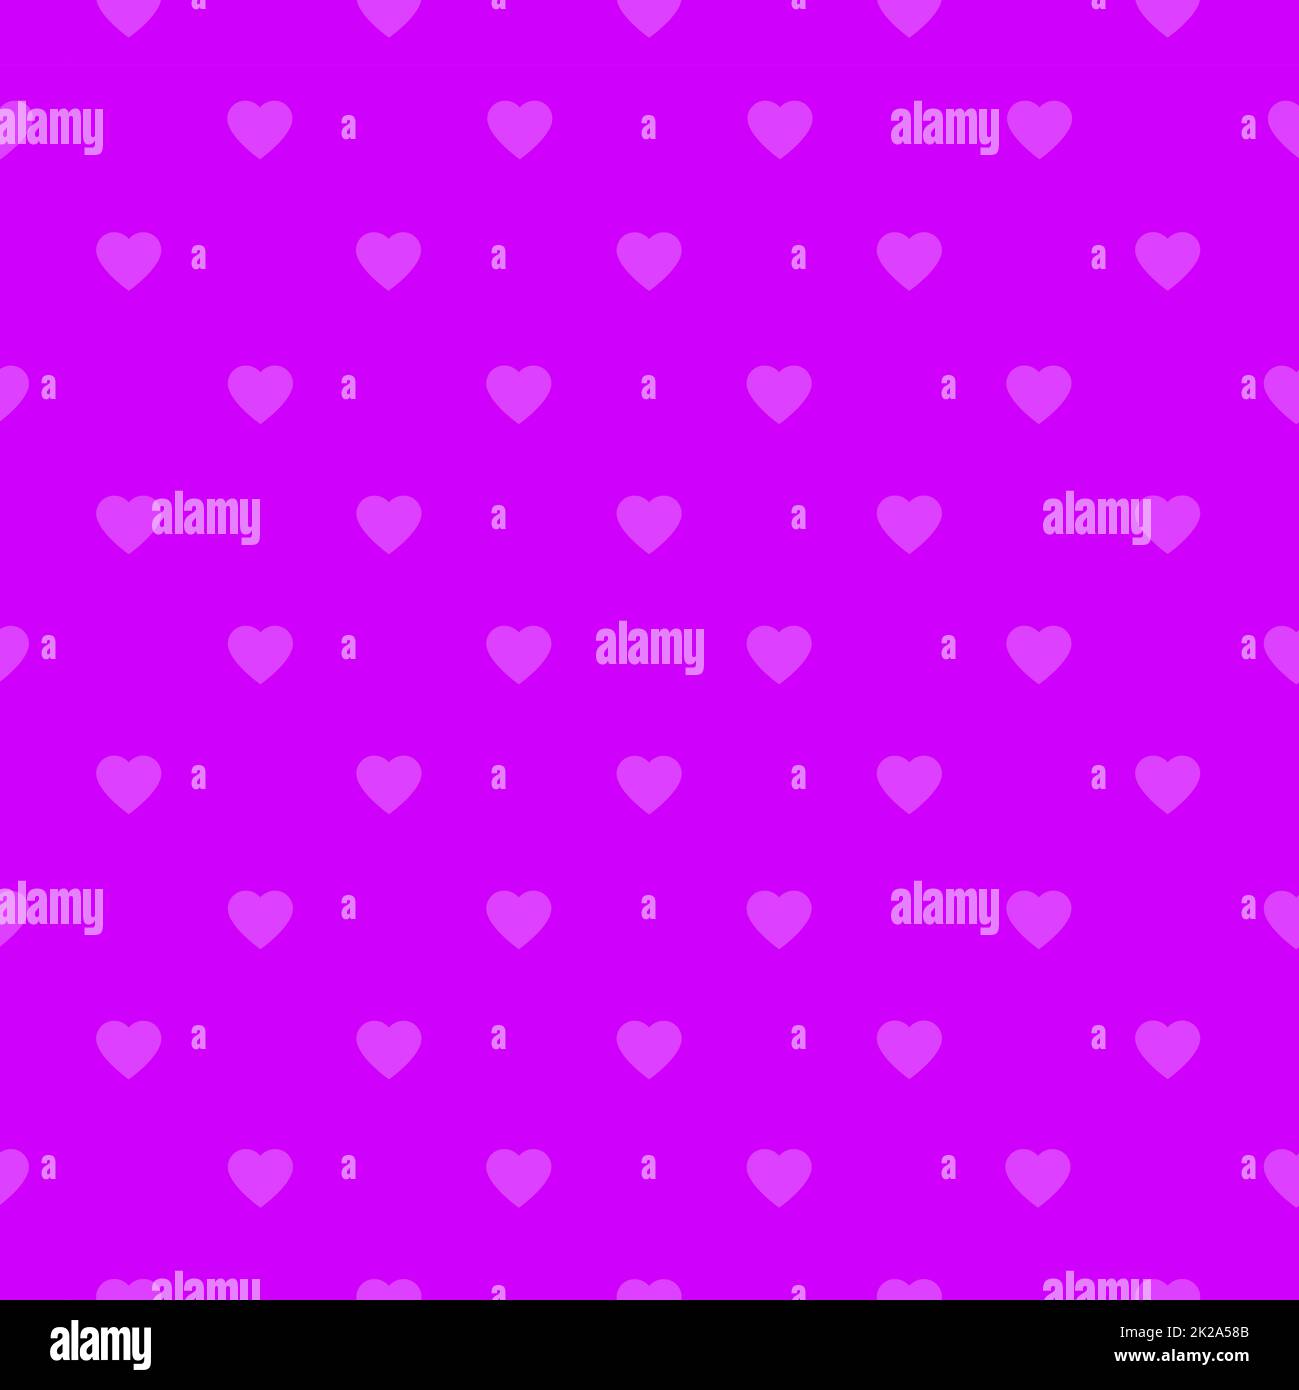 Seamless purple hearts pattern Stock Photo